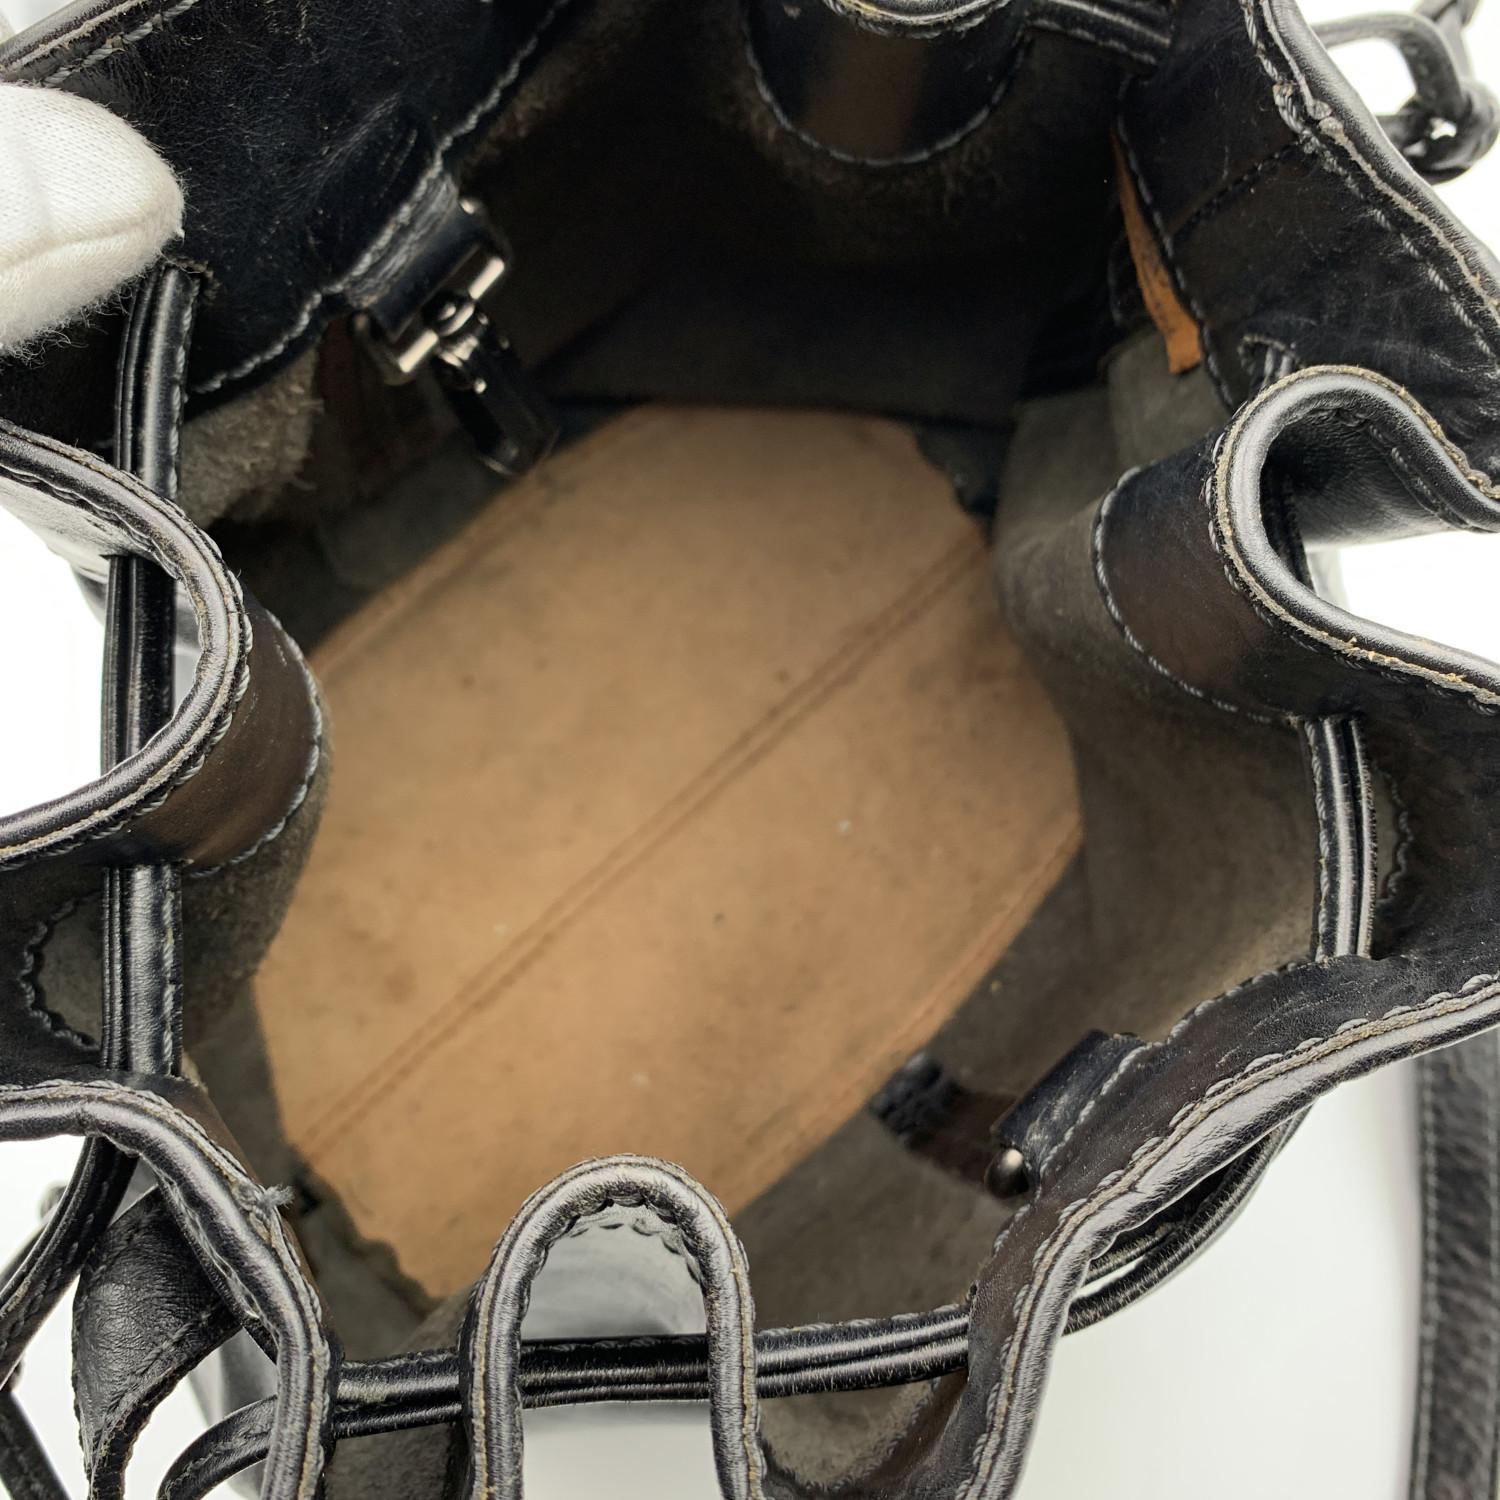 The Bridge Black Leather Drawstring Bucket Shoulder Bag. Silver metal signed hardware. Drawstring closure on top. Adjustable shoulder strap.Suede lining. 'The Bridge' tag inside


Details

MATERIAL: Leather

COLOR: Black

MODEL: -

GENDER: